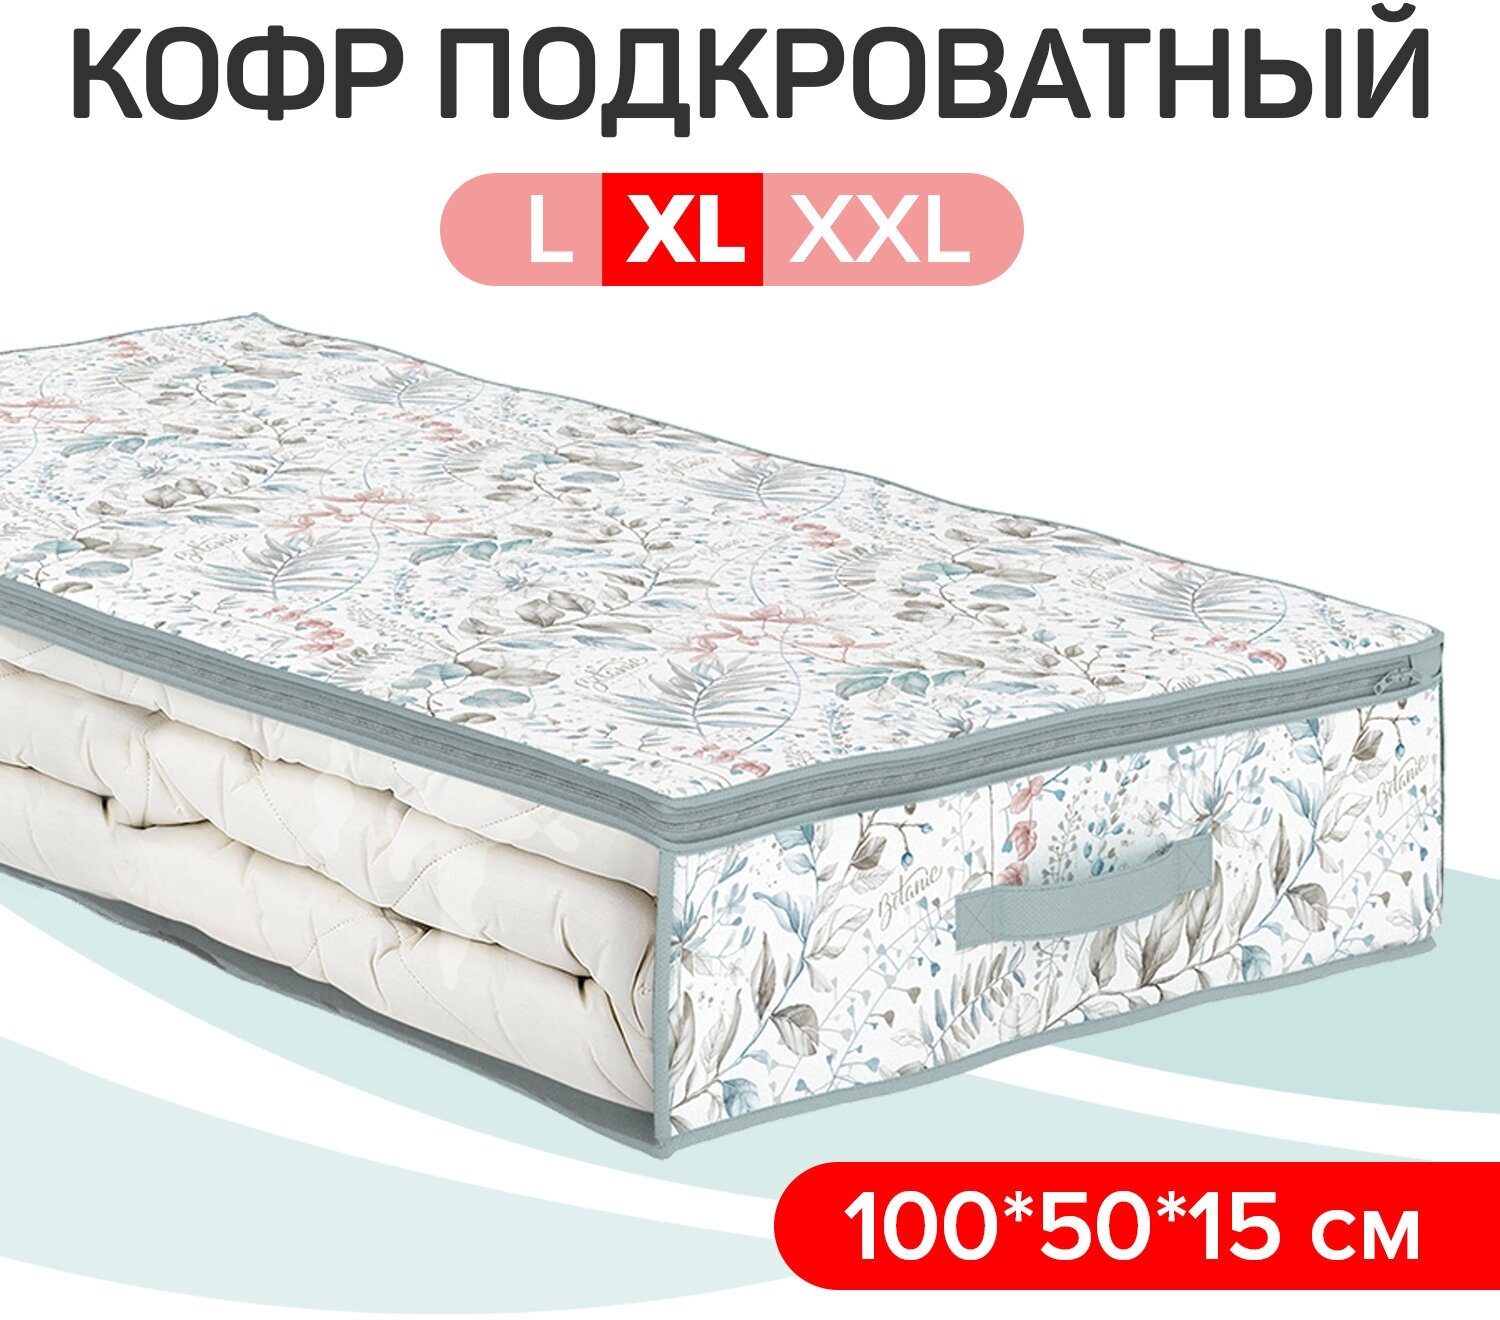 Кофр для хранения подкроватный 100*50*15 см VALIANT BOTANIC